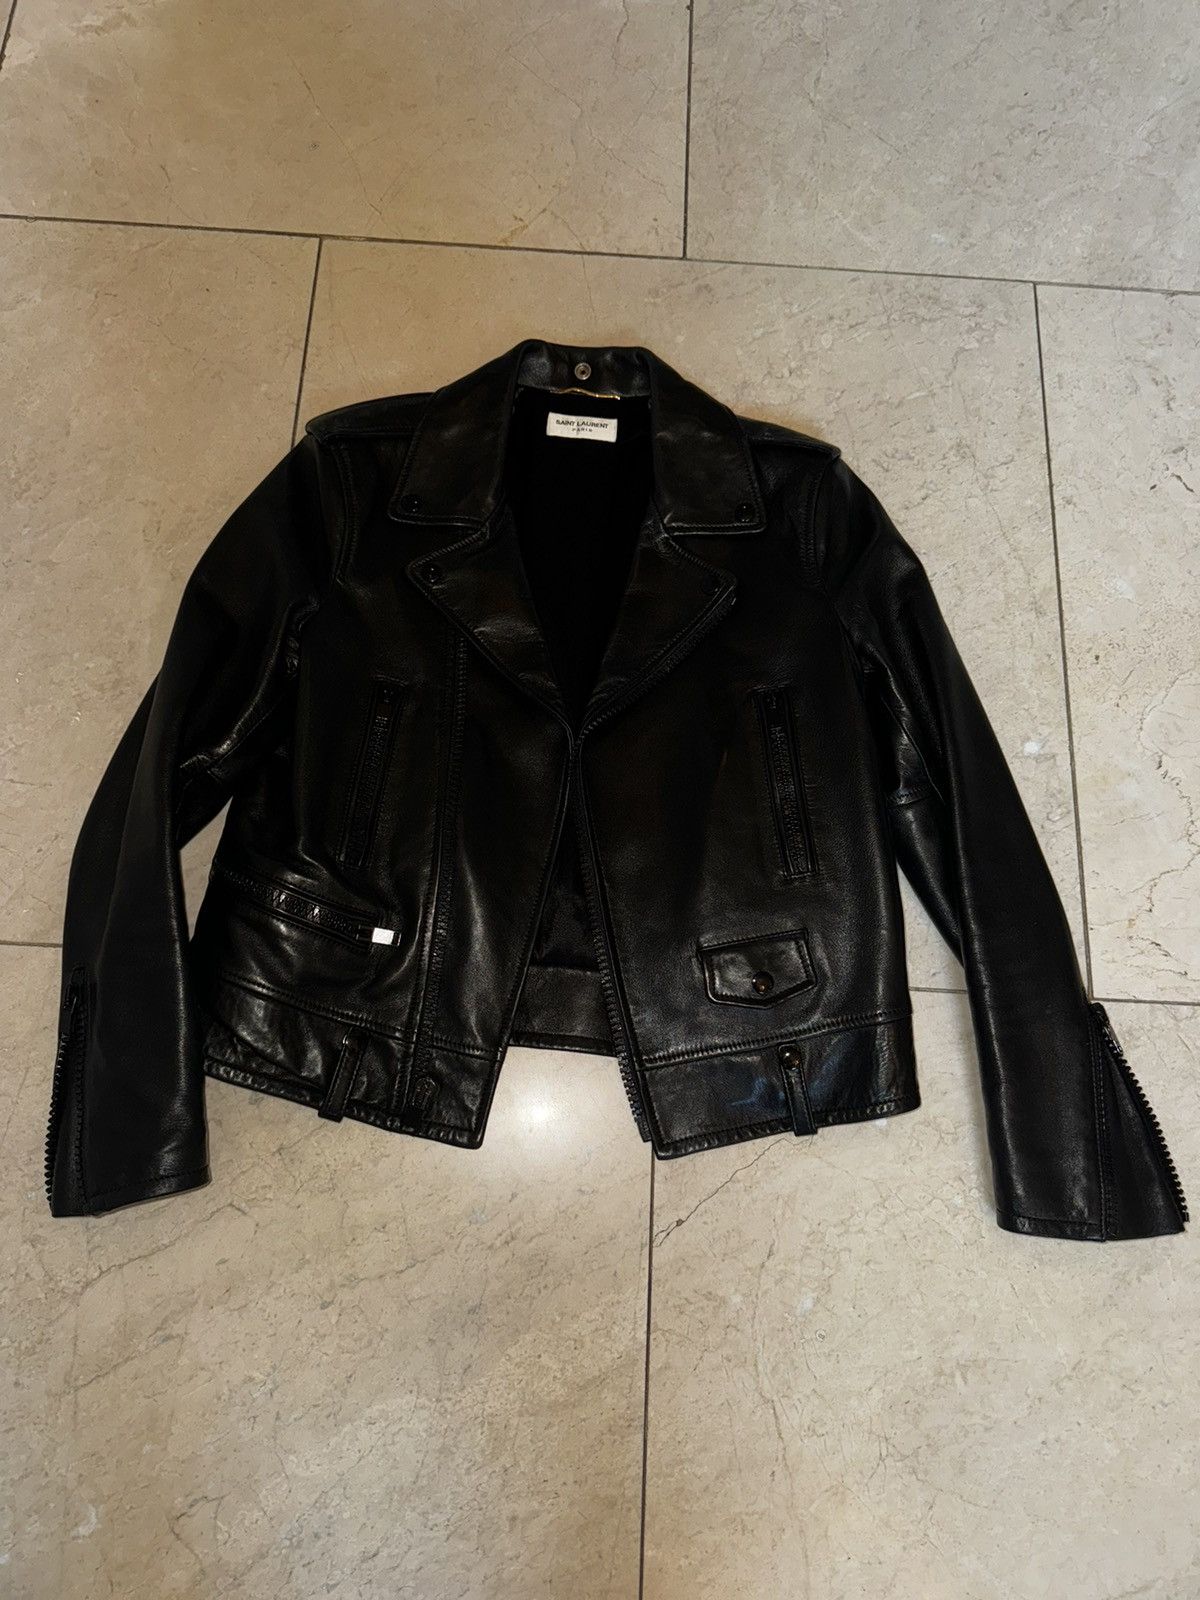 Saint Laurent Paris Black Leather Moto Jacket Size M / US 6-8 / IT 42-44 - 2 Preview